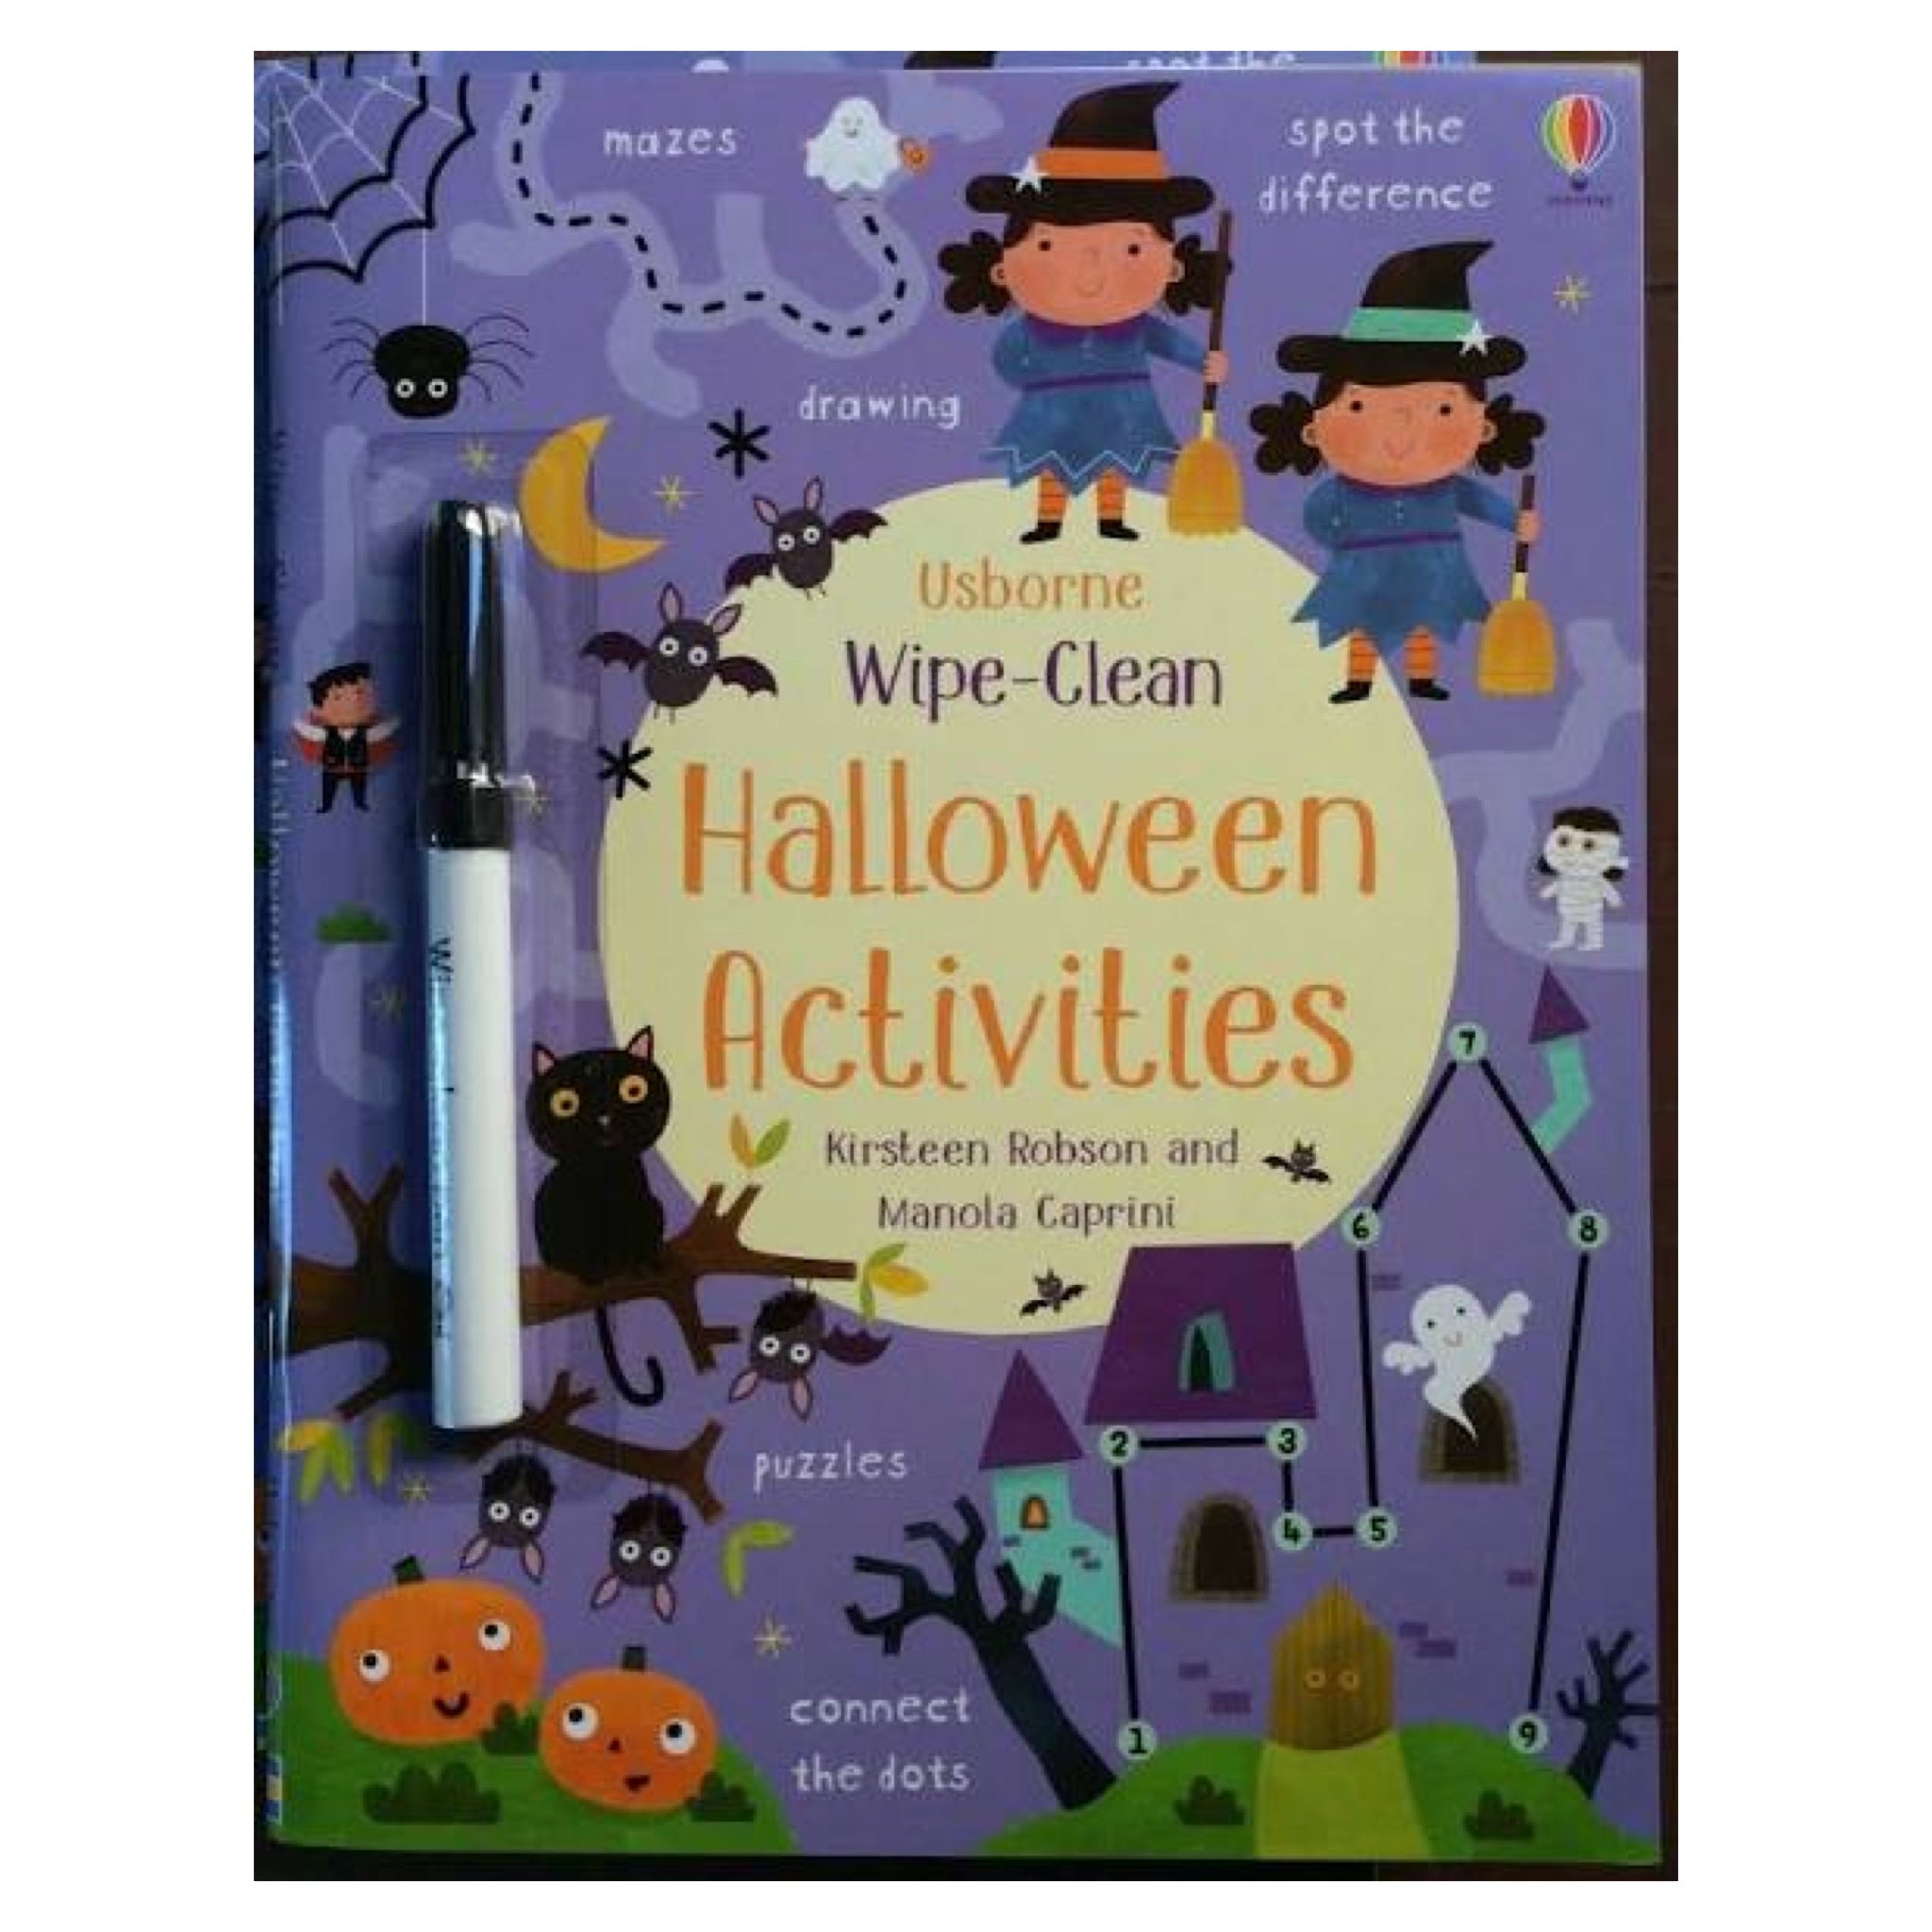 Wipe-Clean, Halloween Activites